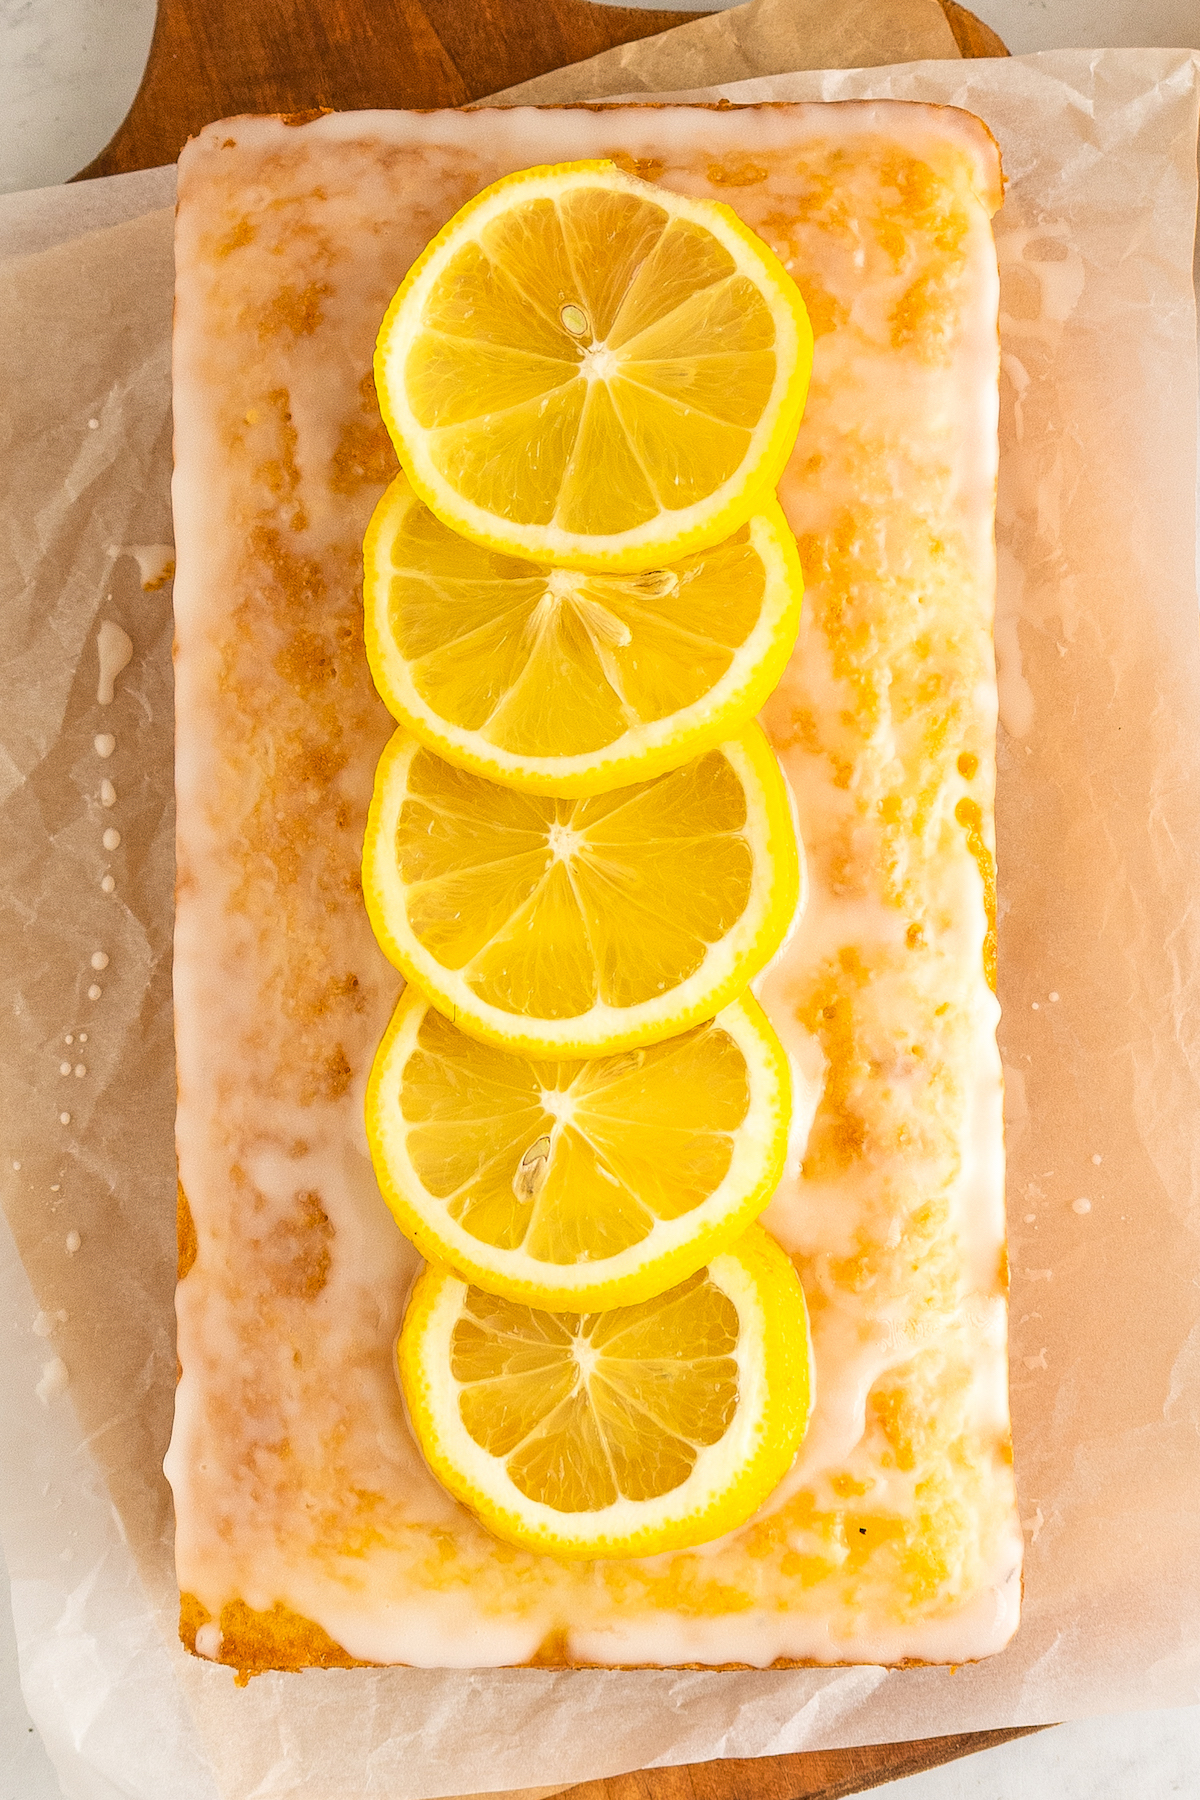 Overhead shot of glazed lemon bread, topped with slices of fresh lemon.